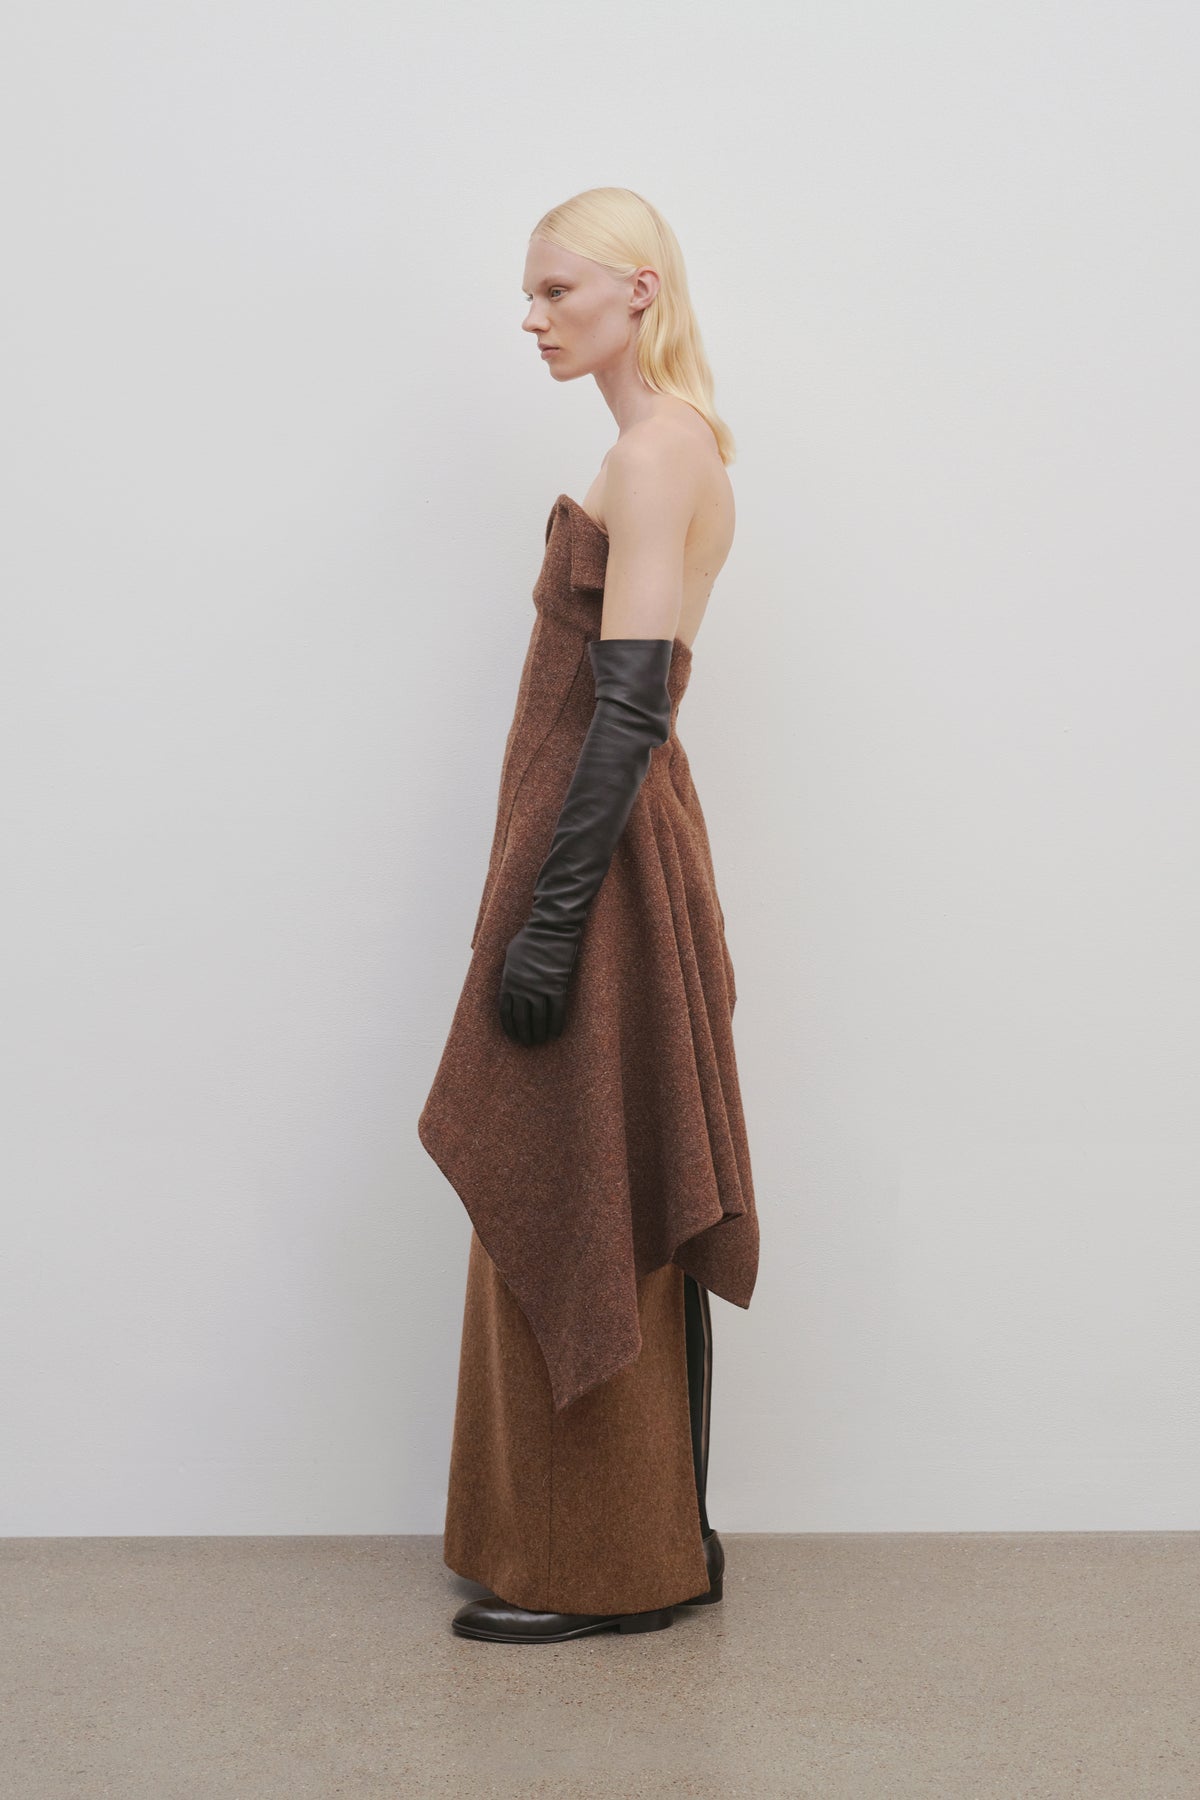 Bartelle Skirt in Wool